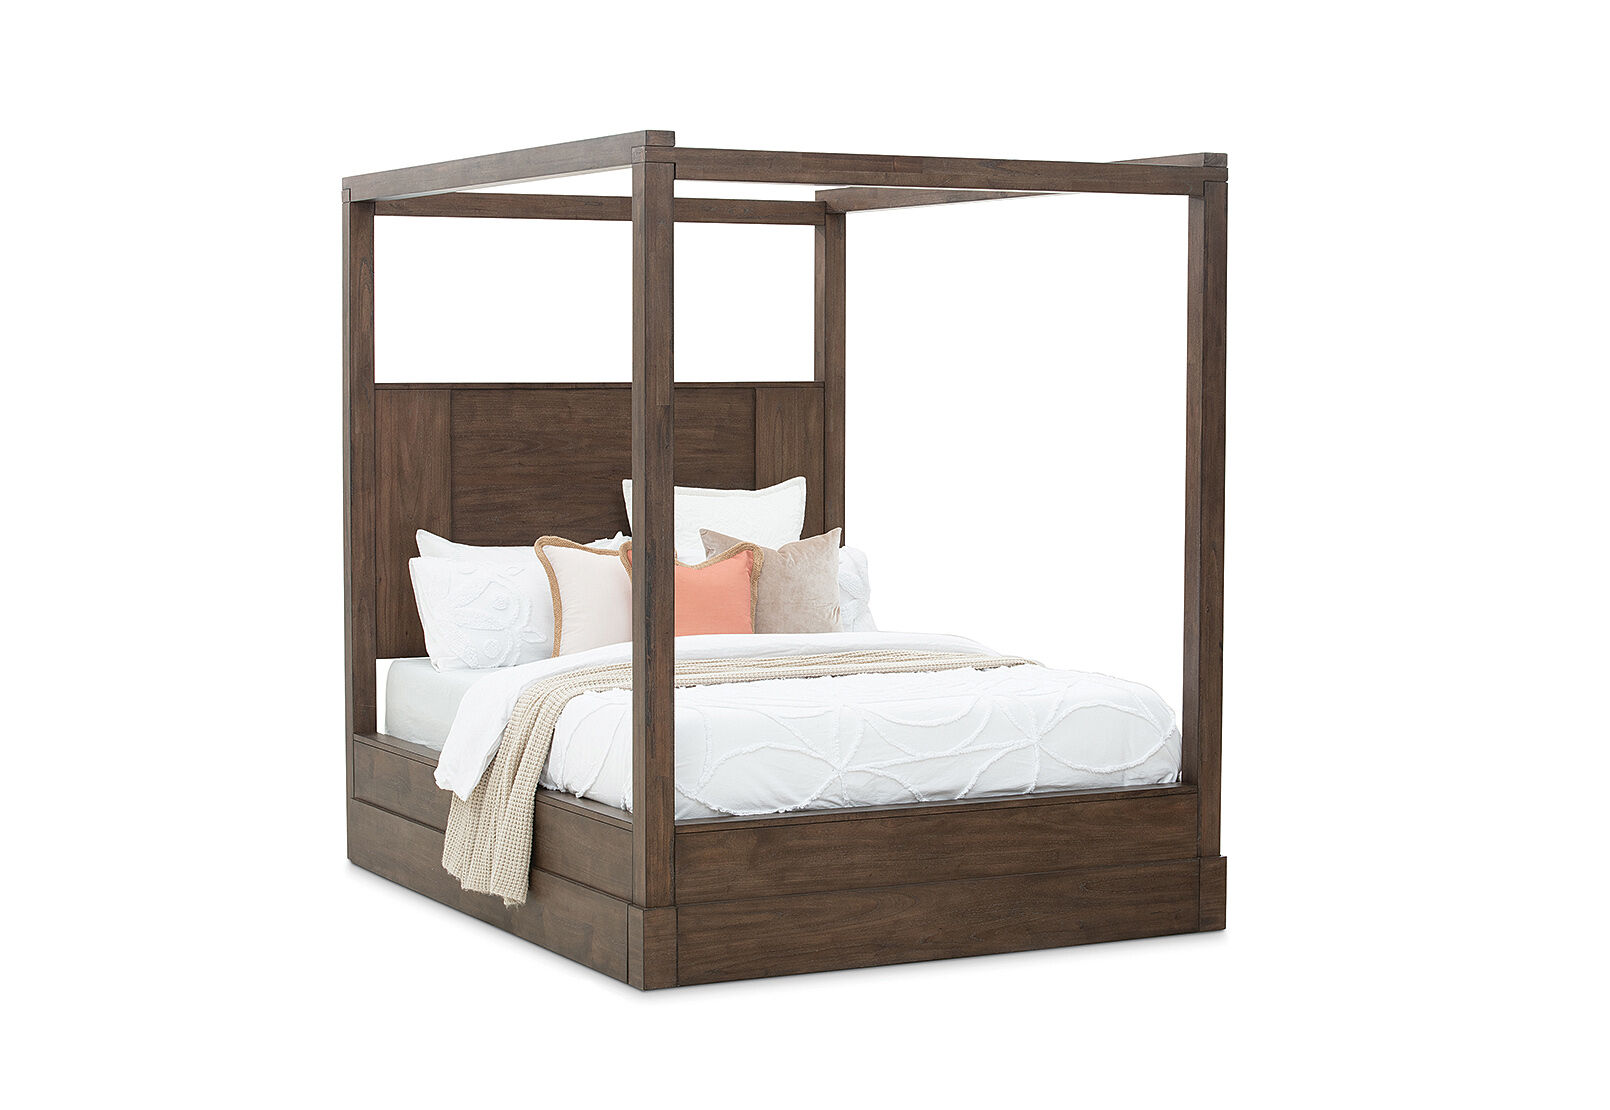 4 Post Queen Bed Amart Furniture, Roseville Bunk Beds